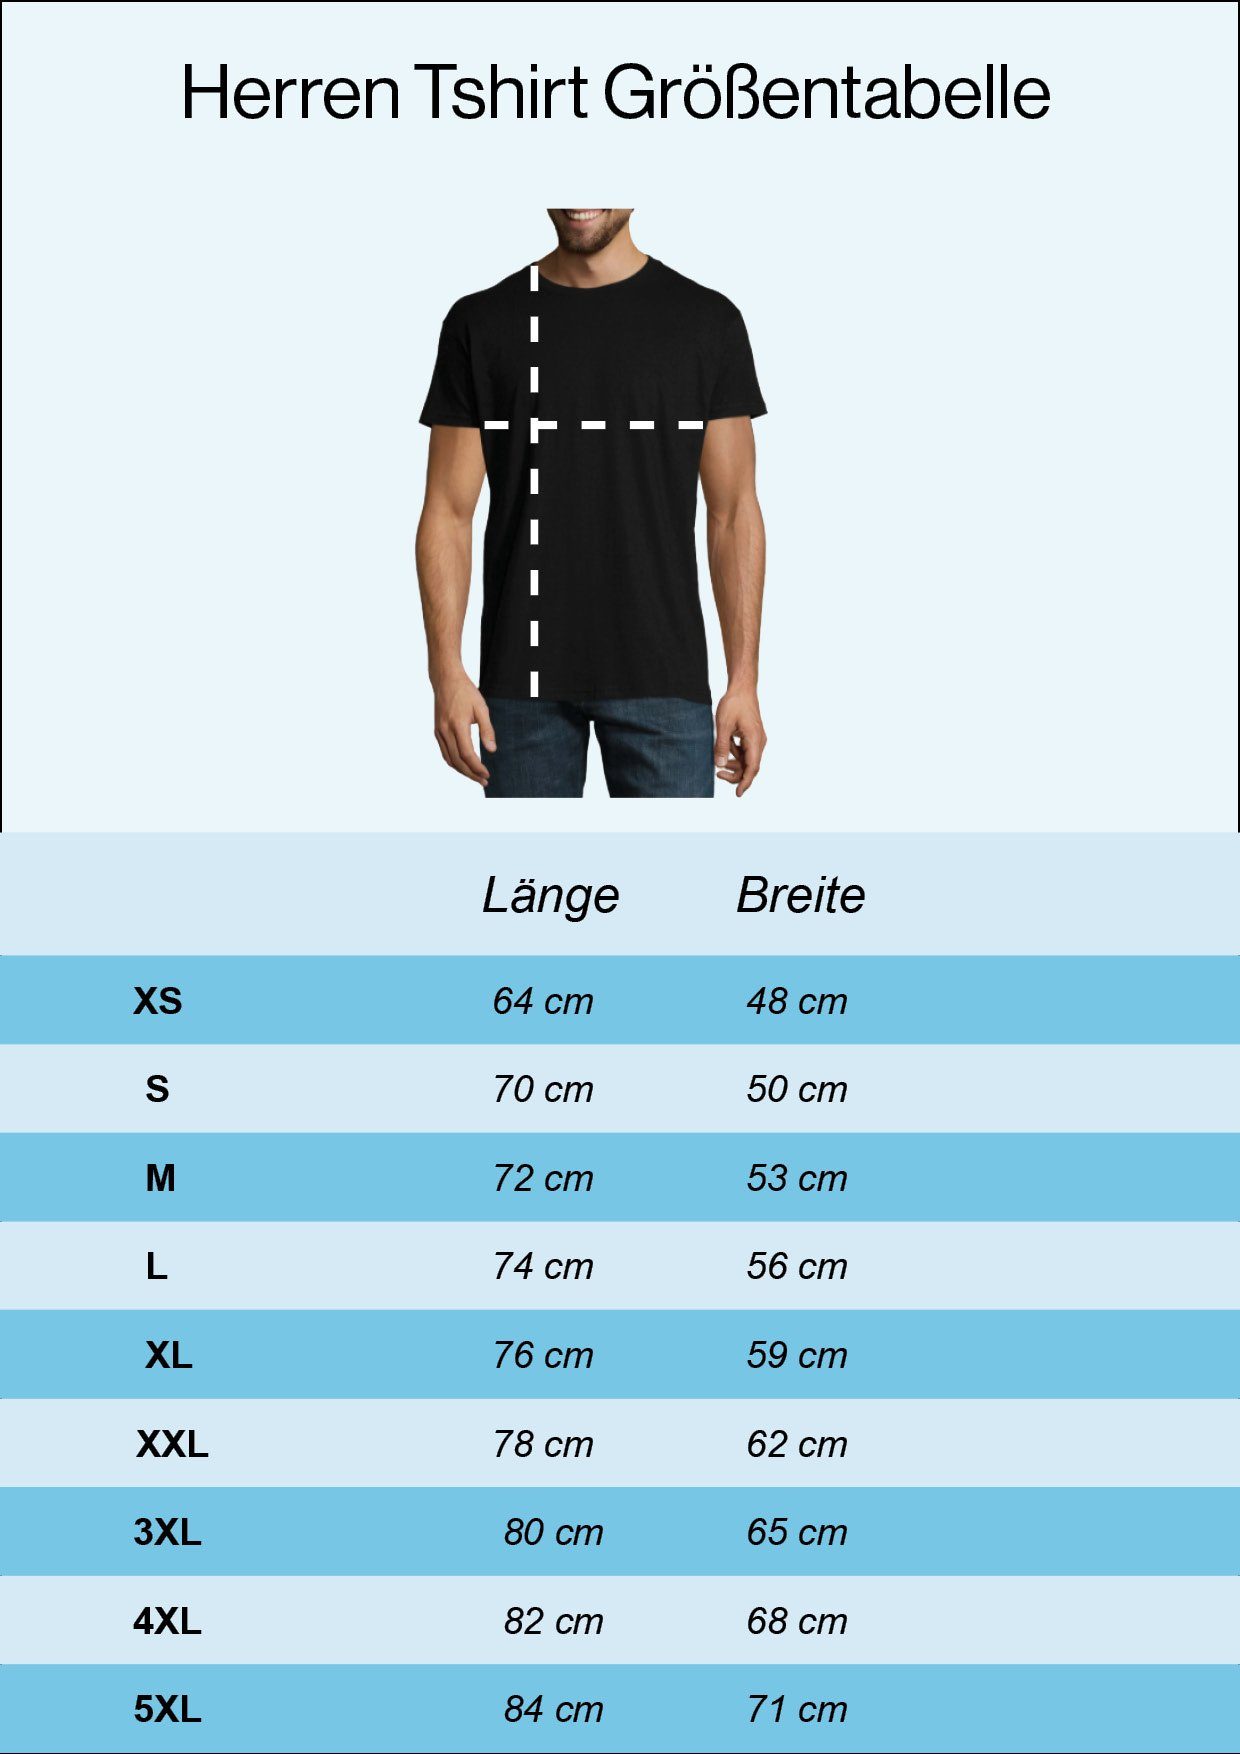 Die Shirt Navyblau Für Zweitakt T-Shirt Ewigkeit Youth Designz mit trendigem Frontprint Herren